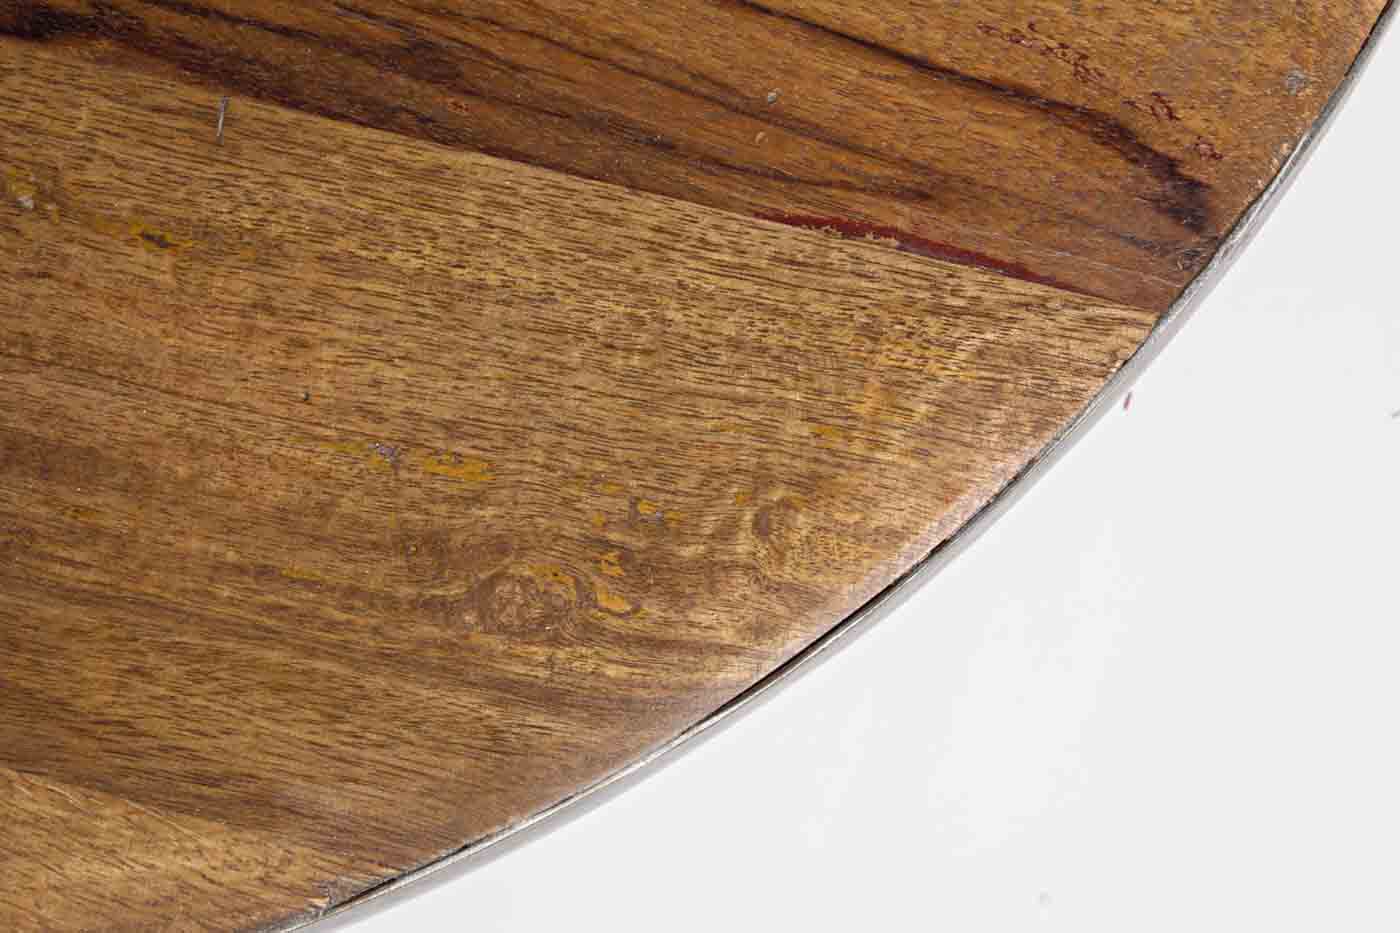 Der Couchtisch Lancaster wurde aus Recycelten Materialien hergestellt. Dadurch ist jedes Stück ein Unikat. Designet wurde der Tisch von der Marke Bizotto.